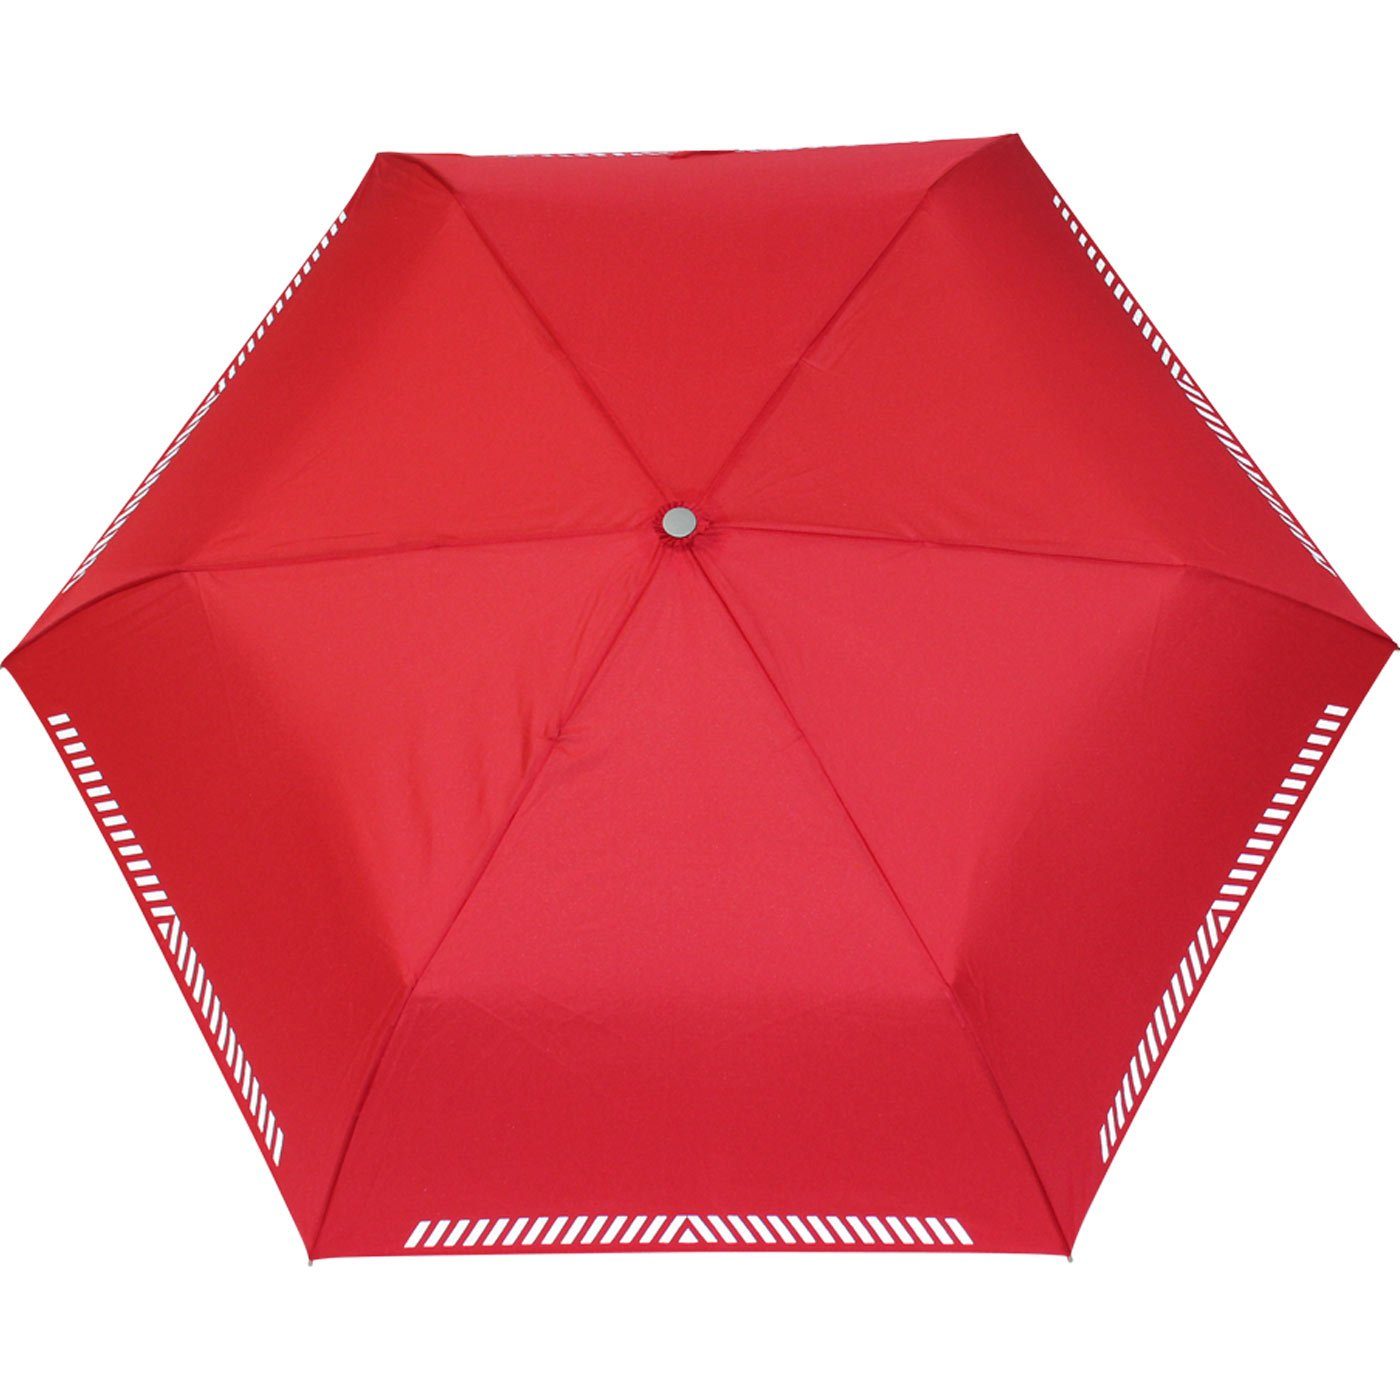 iX-brella Taschenregenschirm Mini Kinderschirm reflektierend Safety leicht, Reflex rot extra